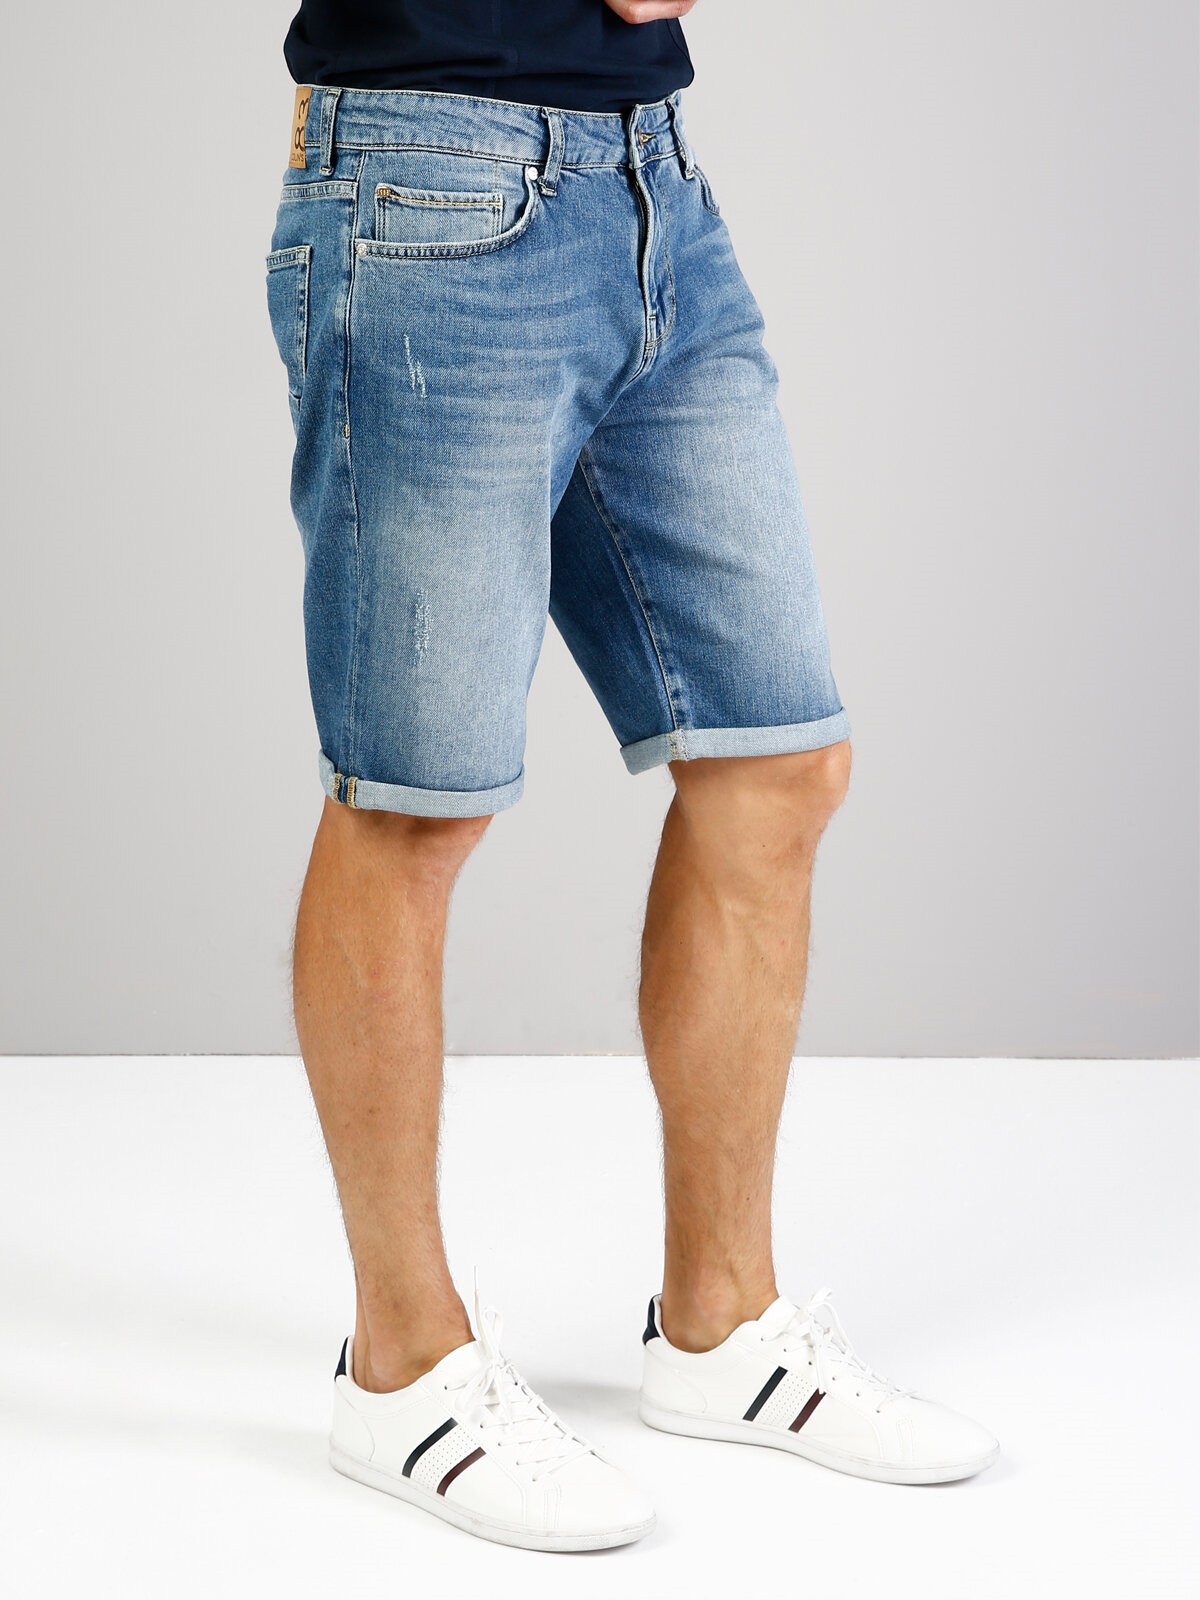 Afișați detalii pentru Albastru Barbati Short / Pantaloni Scurti Straight Fit